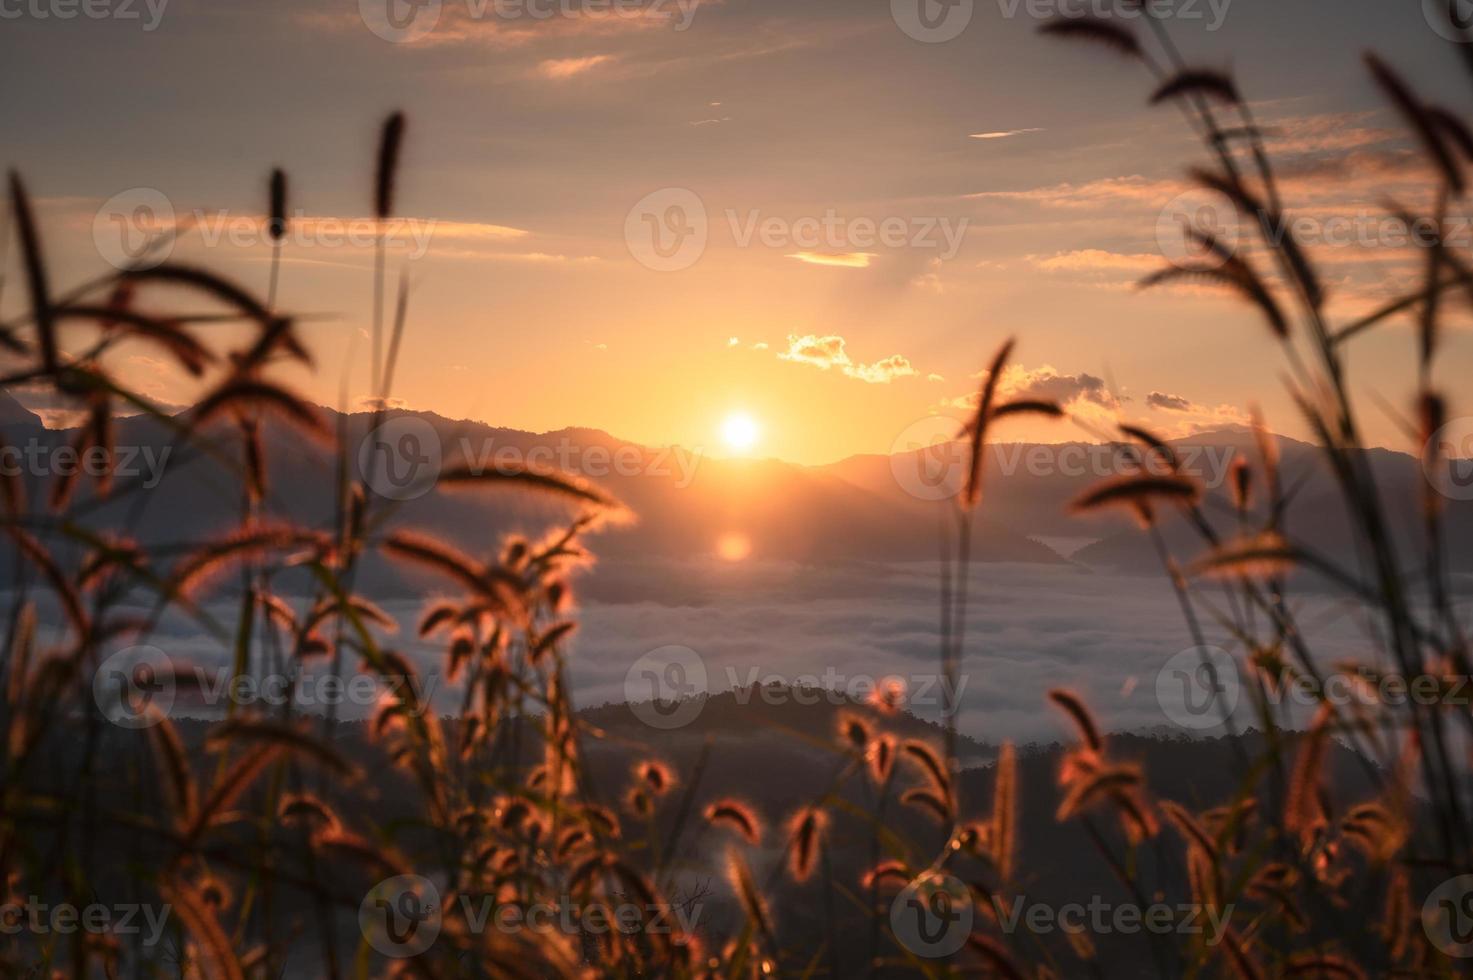 soluppgången lyser över berget med dimmigt och rim ljus på gräs blomma foto